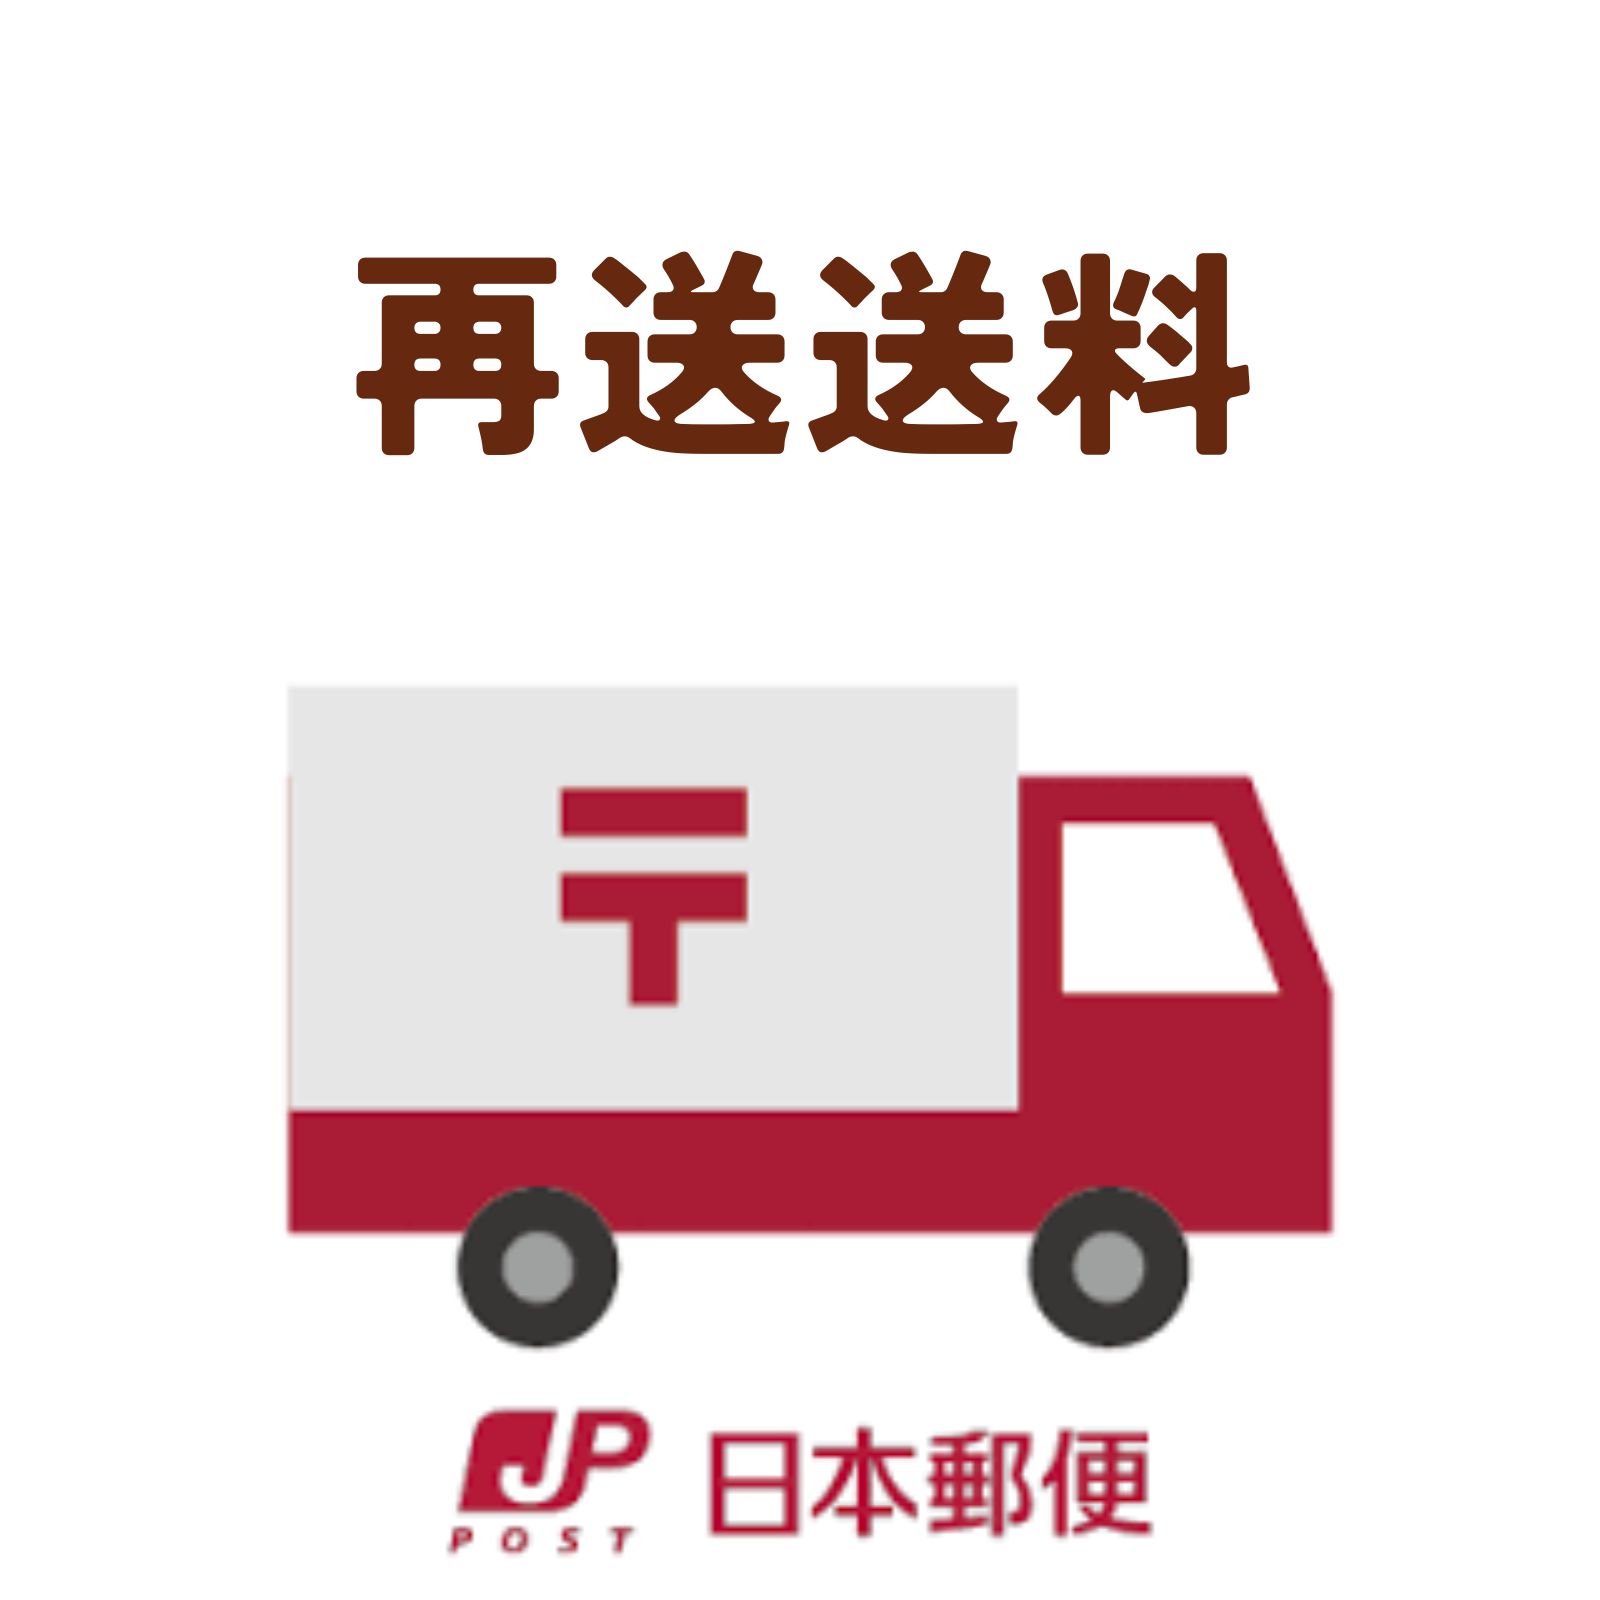 【再送希望のお客様専用ページ】再送ご料金をいただくための商品です・再送送料・日本郵便